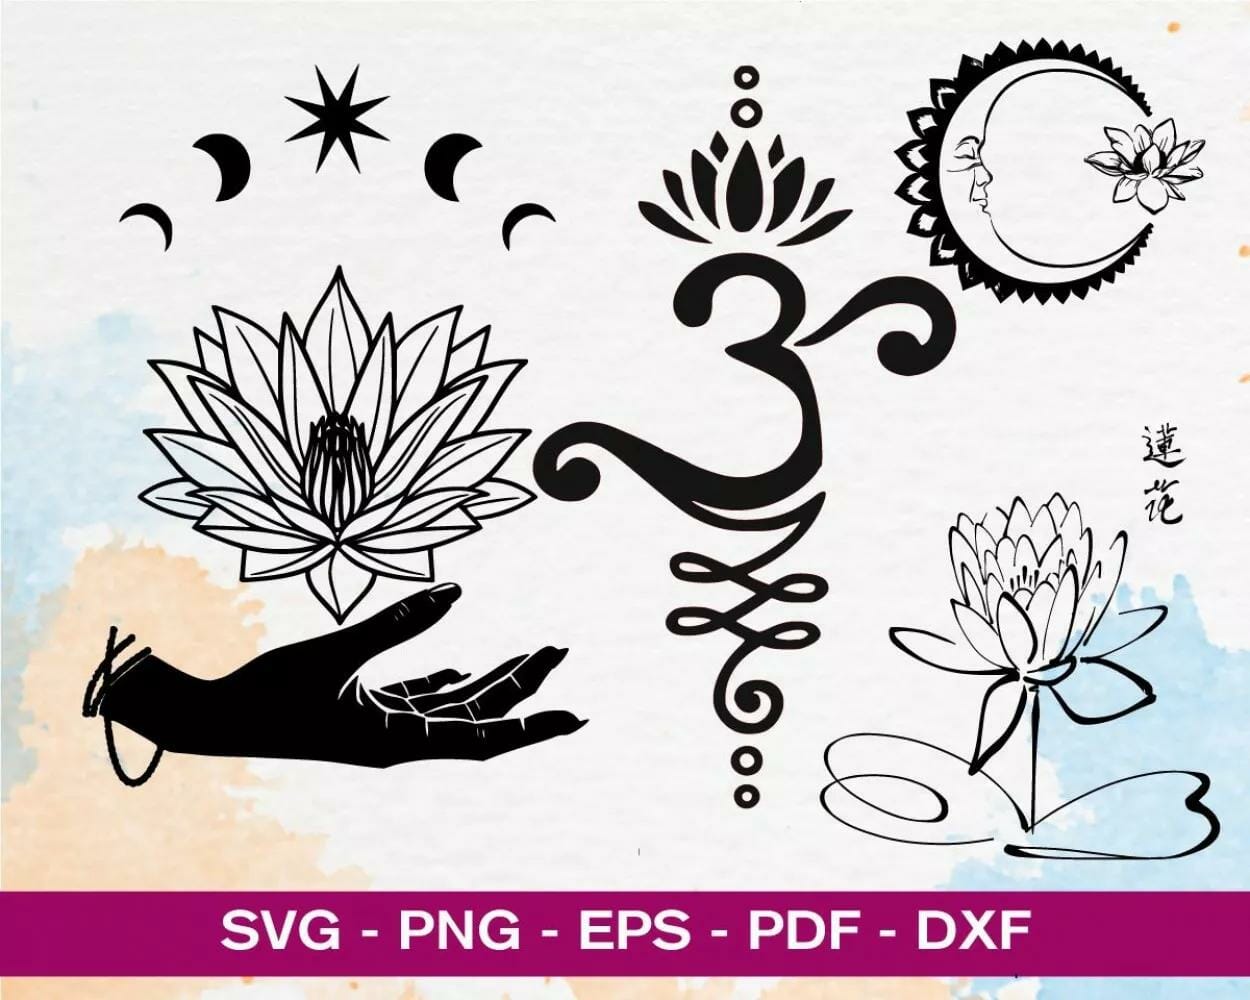 100+ Designs SVG PNG EPS DXF PDF Digital Download||||